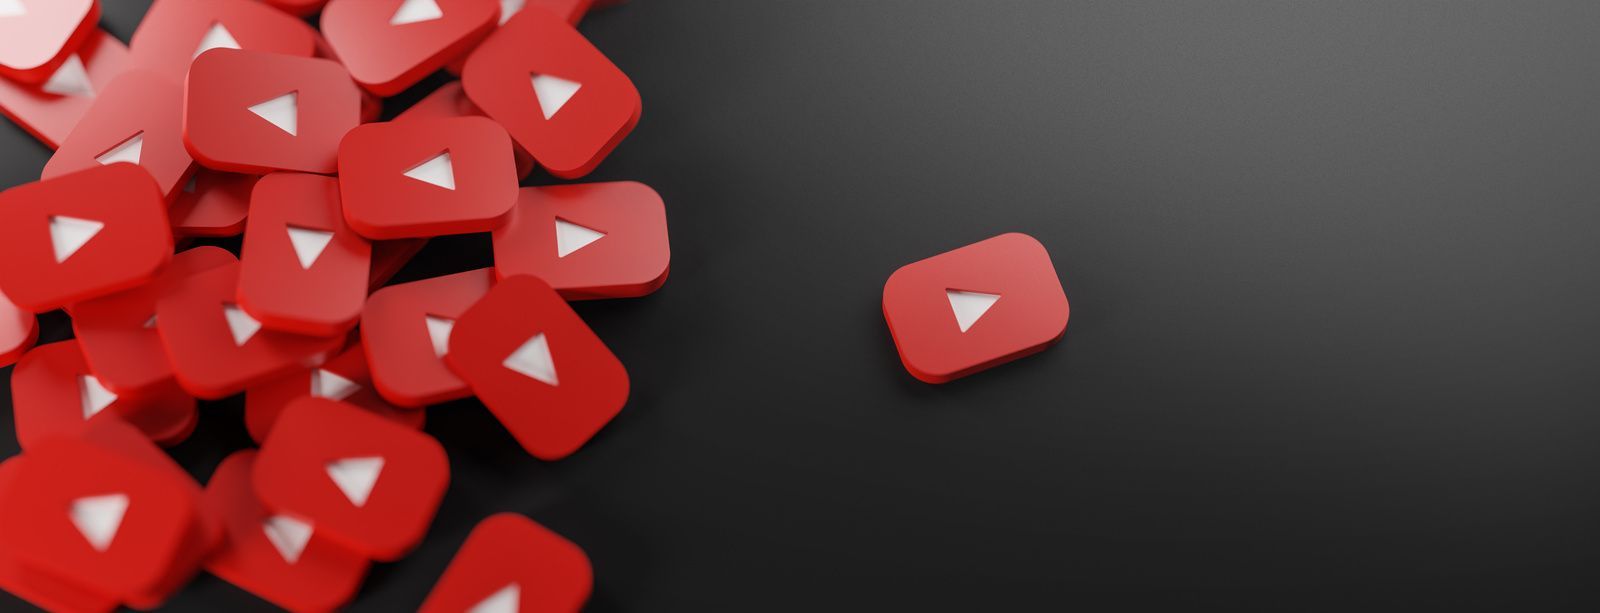 eaderbild zeigt YouTube-Logo und eine erfolgreiche Werbekampagne – Leitfaden für österreichische Unt